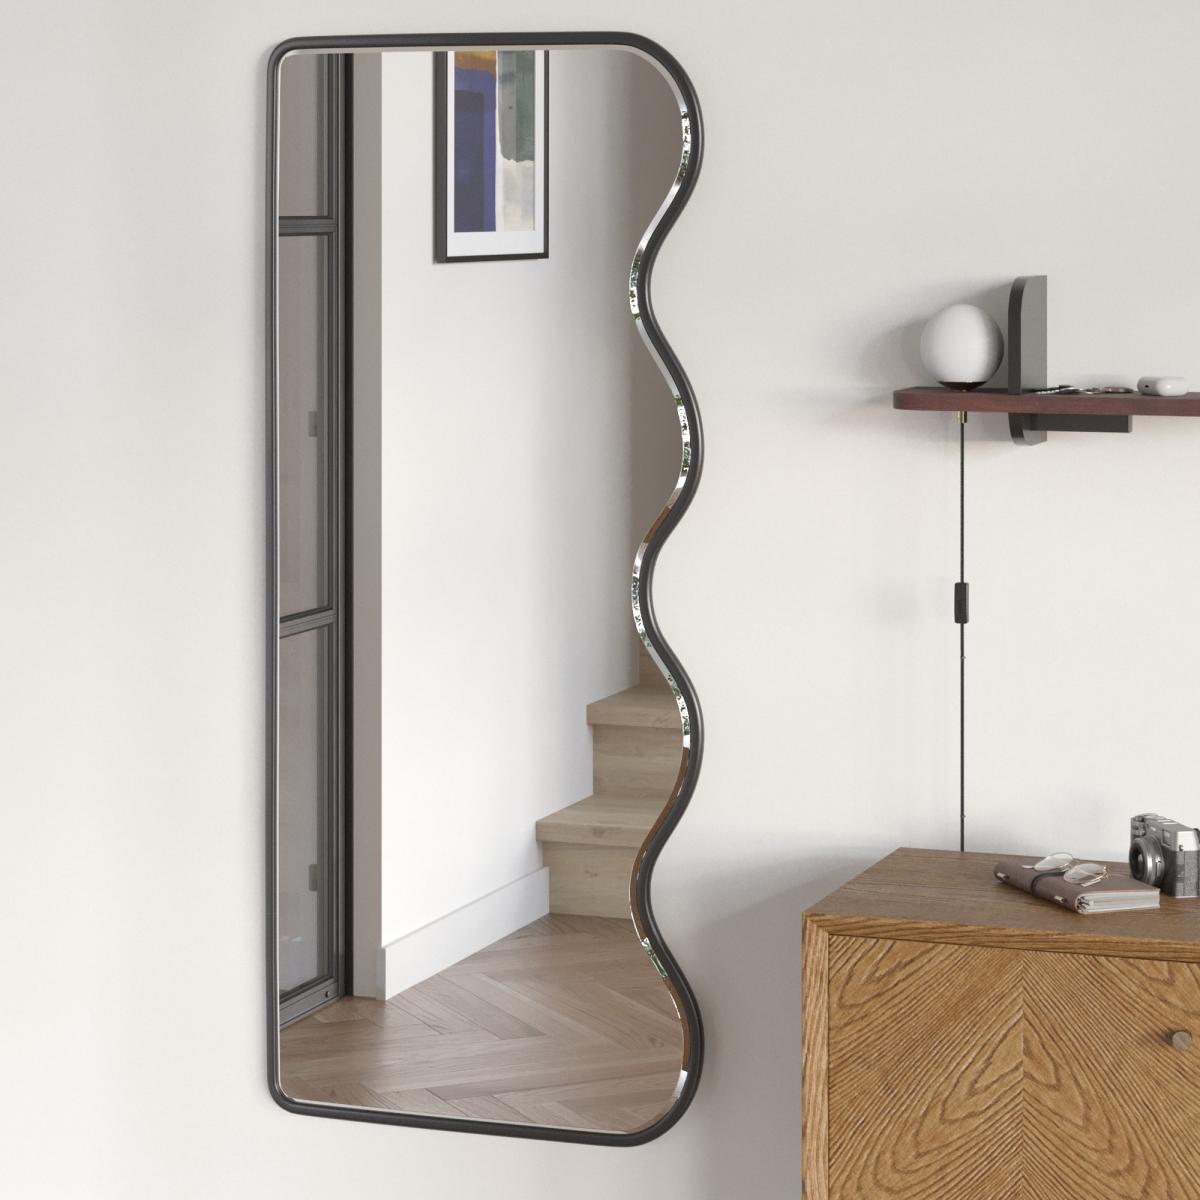 Irregular Shaped Mirror – Arighi Bianchi